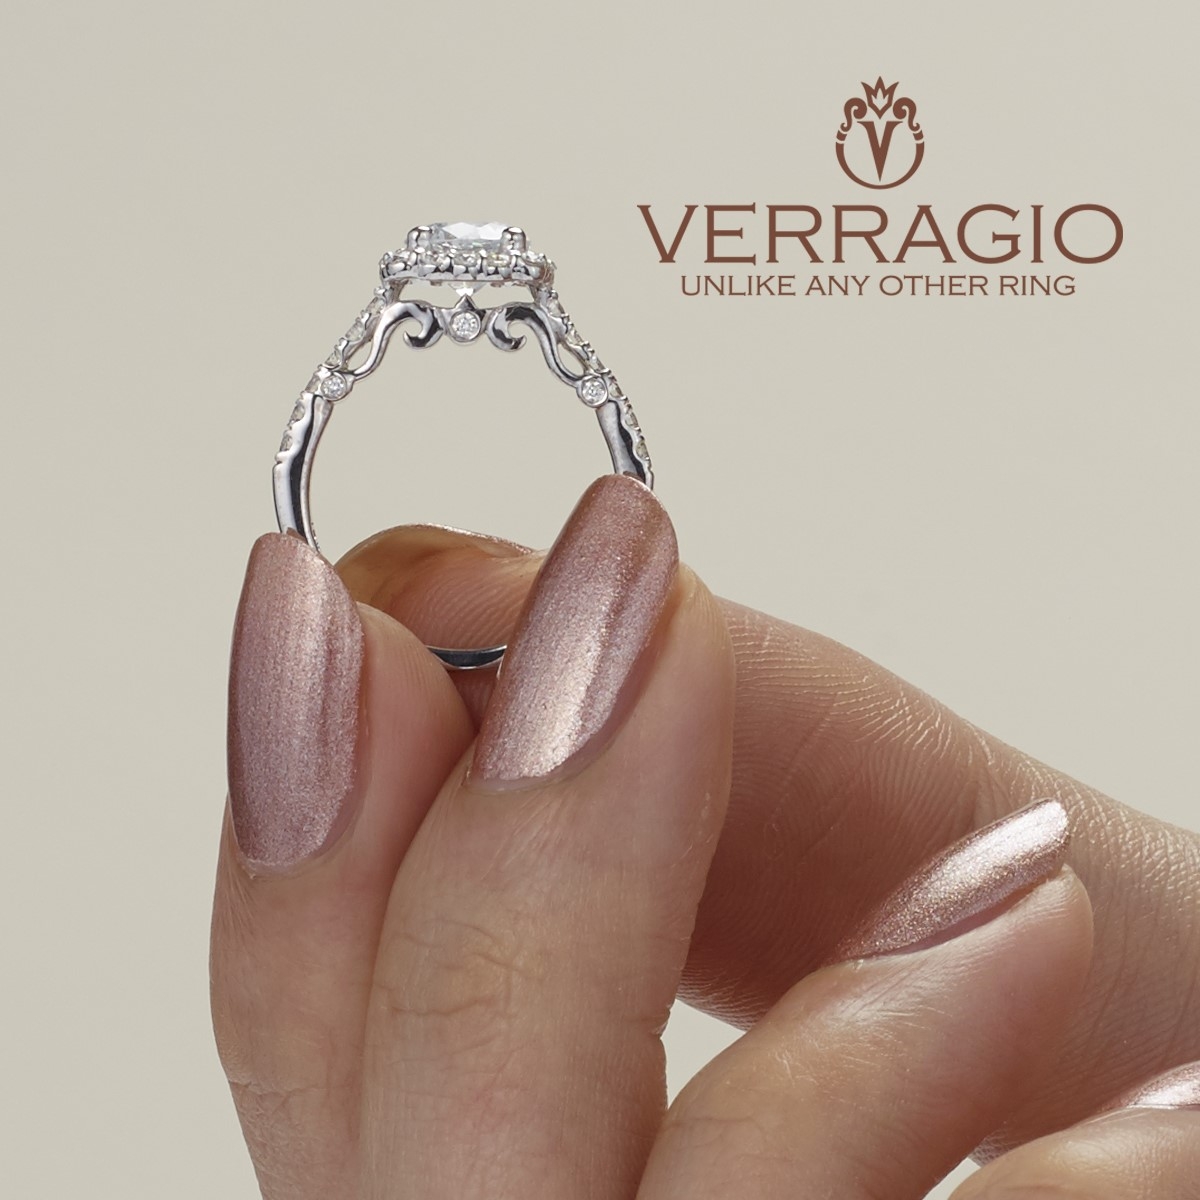 Verragio 14 Karat Insignia-7047 Engagement Ring